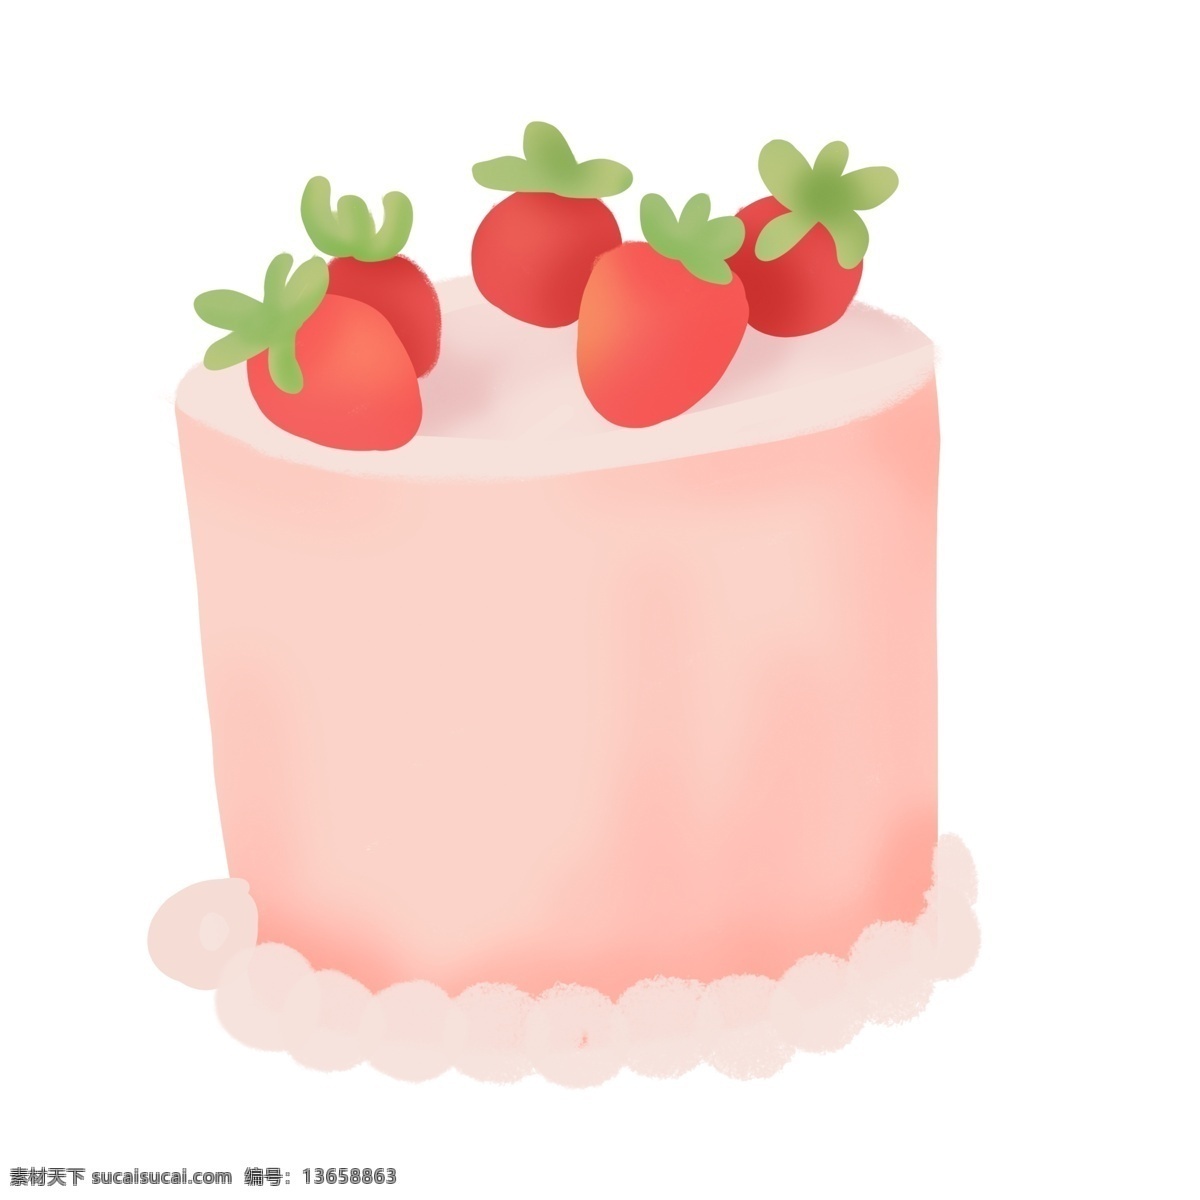 卡通 草莓 生日蛋糕 免 抠 元素 生日派对 手绘 喜庆 奶油 甜品元素